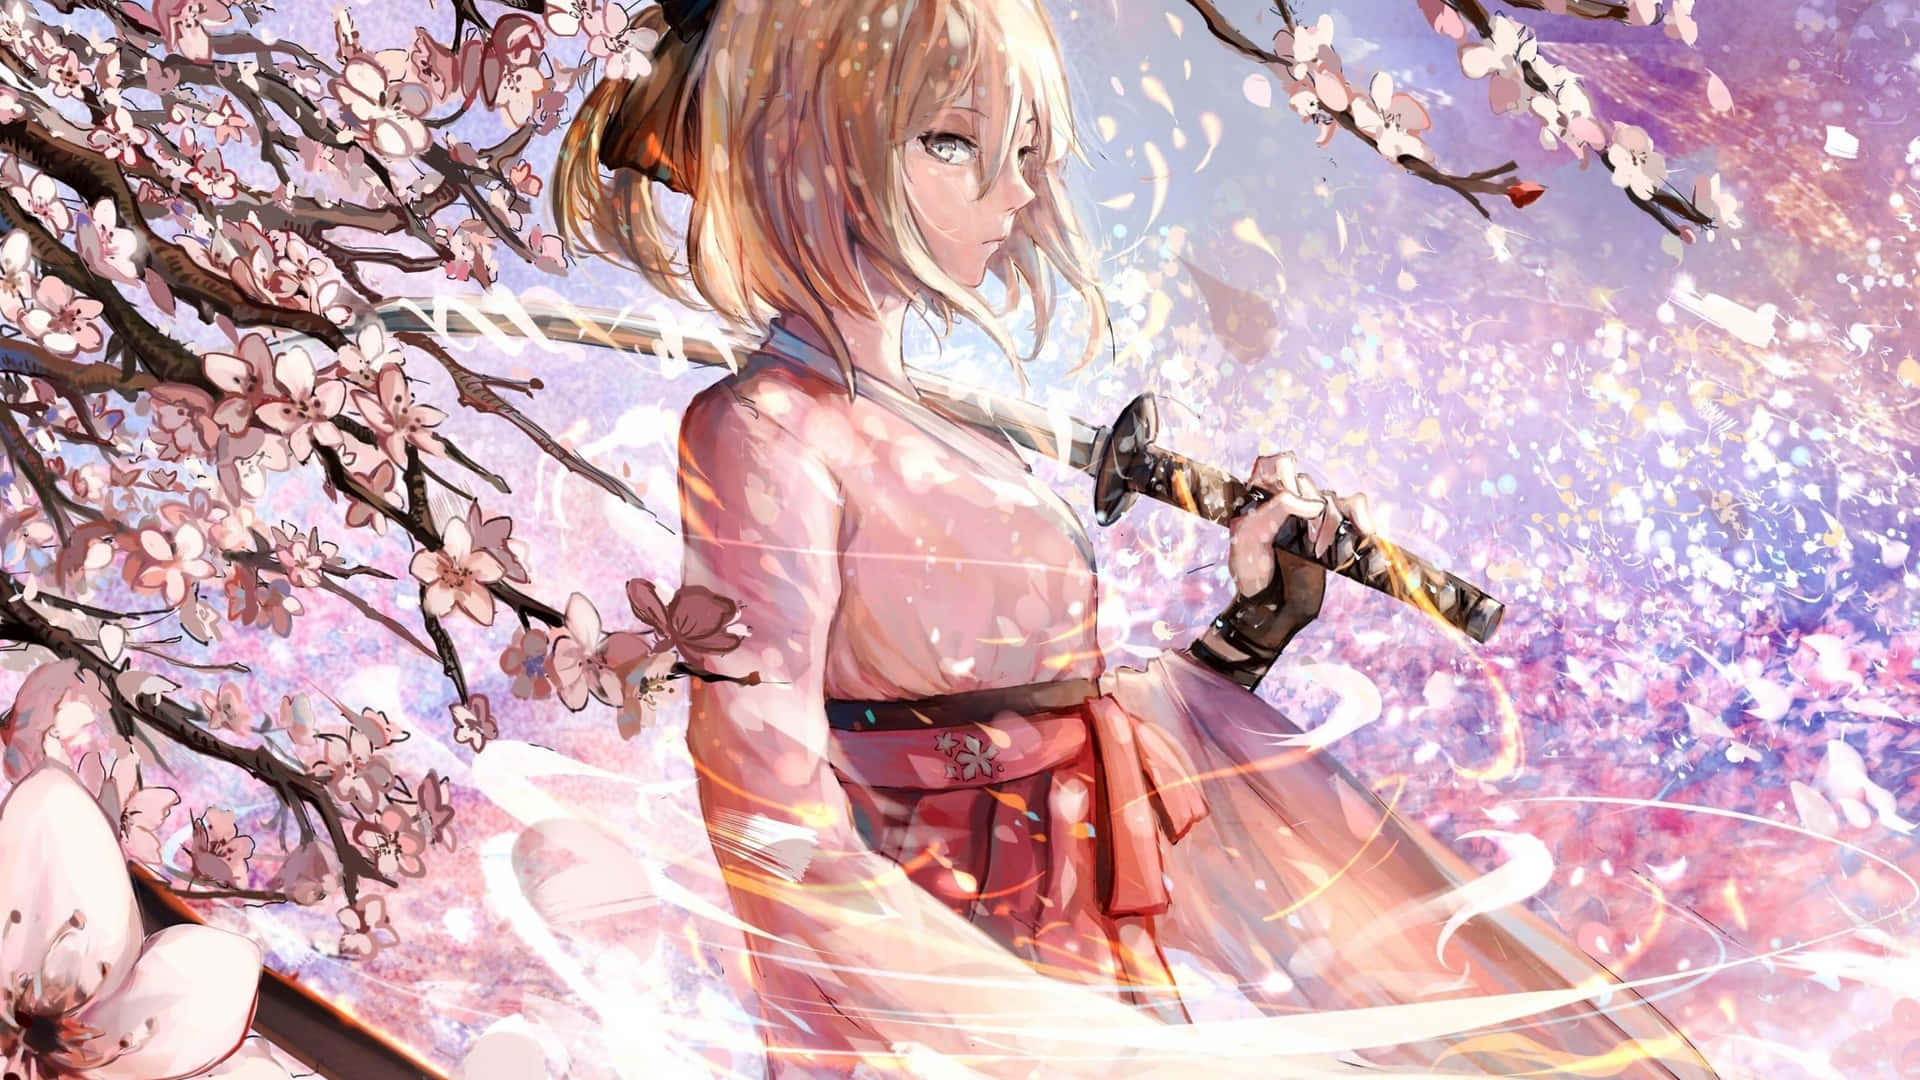 Sakura Anime Fate Grand Order Samurai Pige Illustration 4K Wallpaper Wallpaper